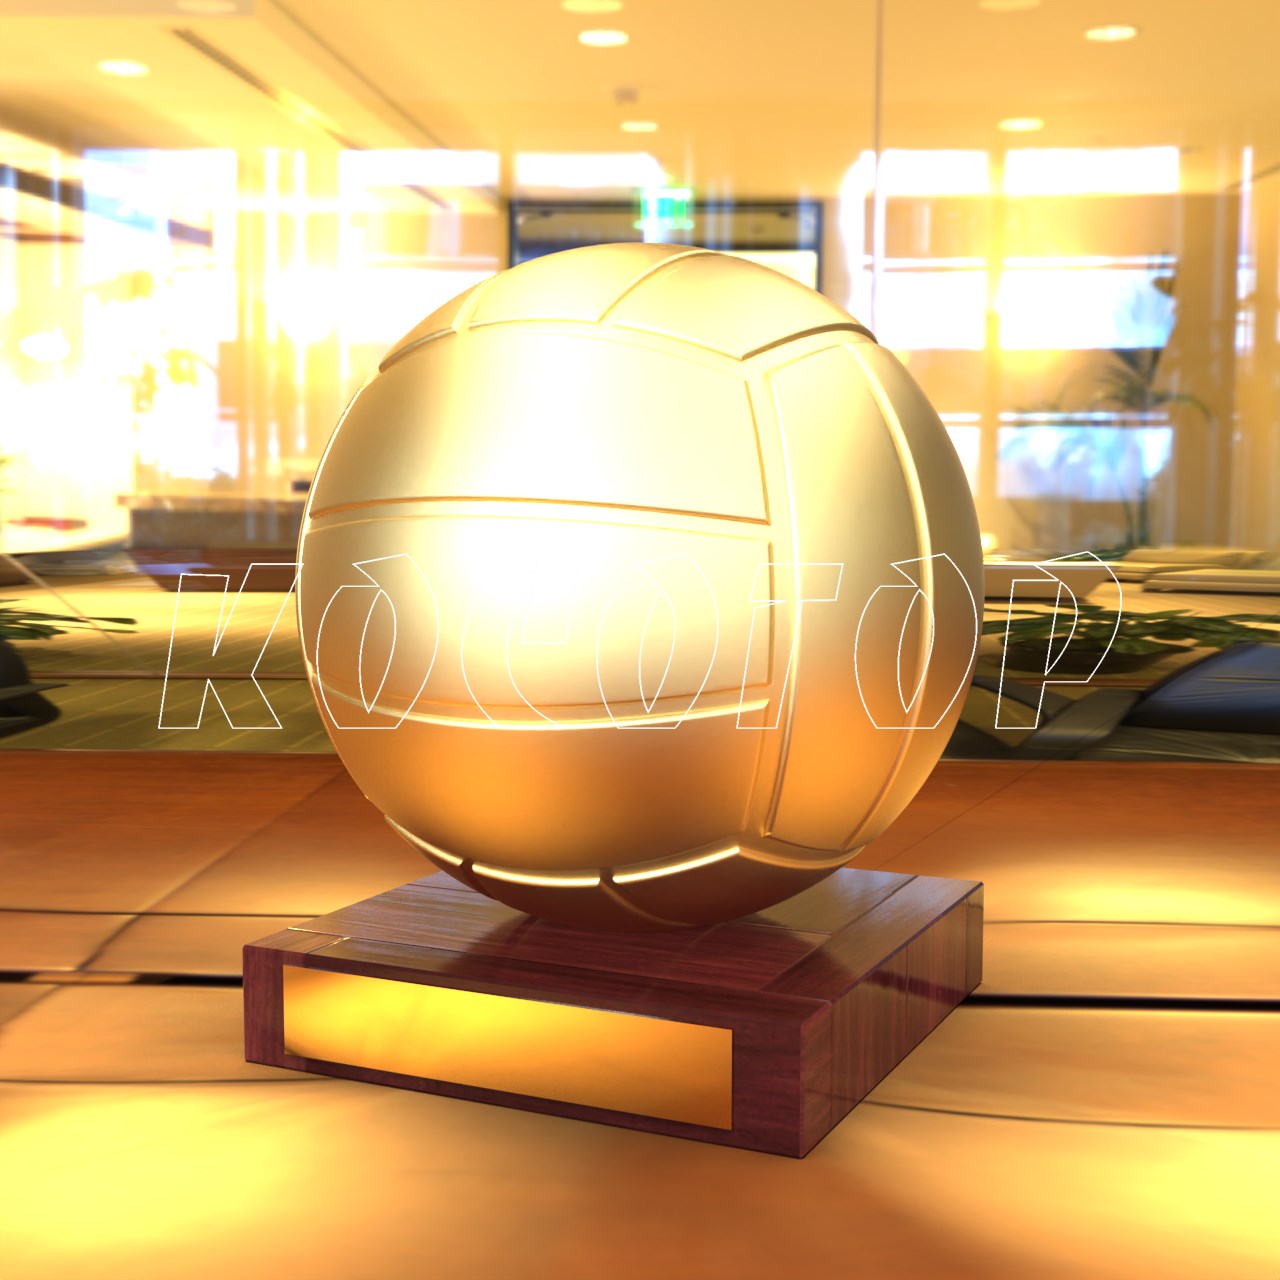 Фото 3 - Награда волейбольная Мяч KSG-675.